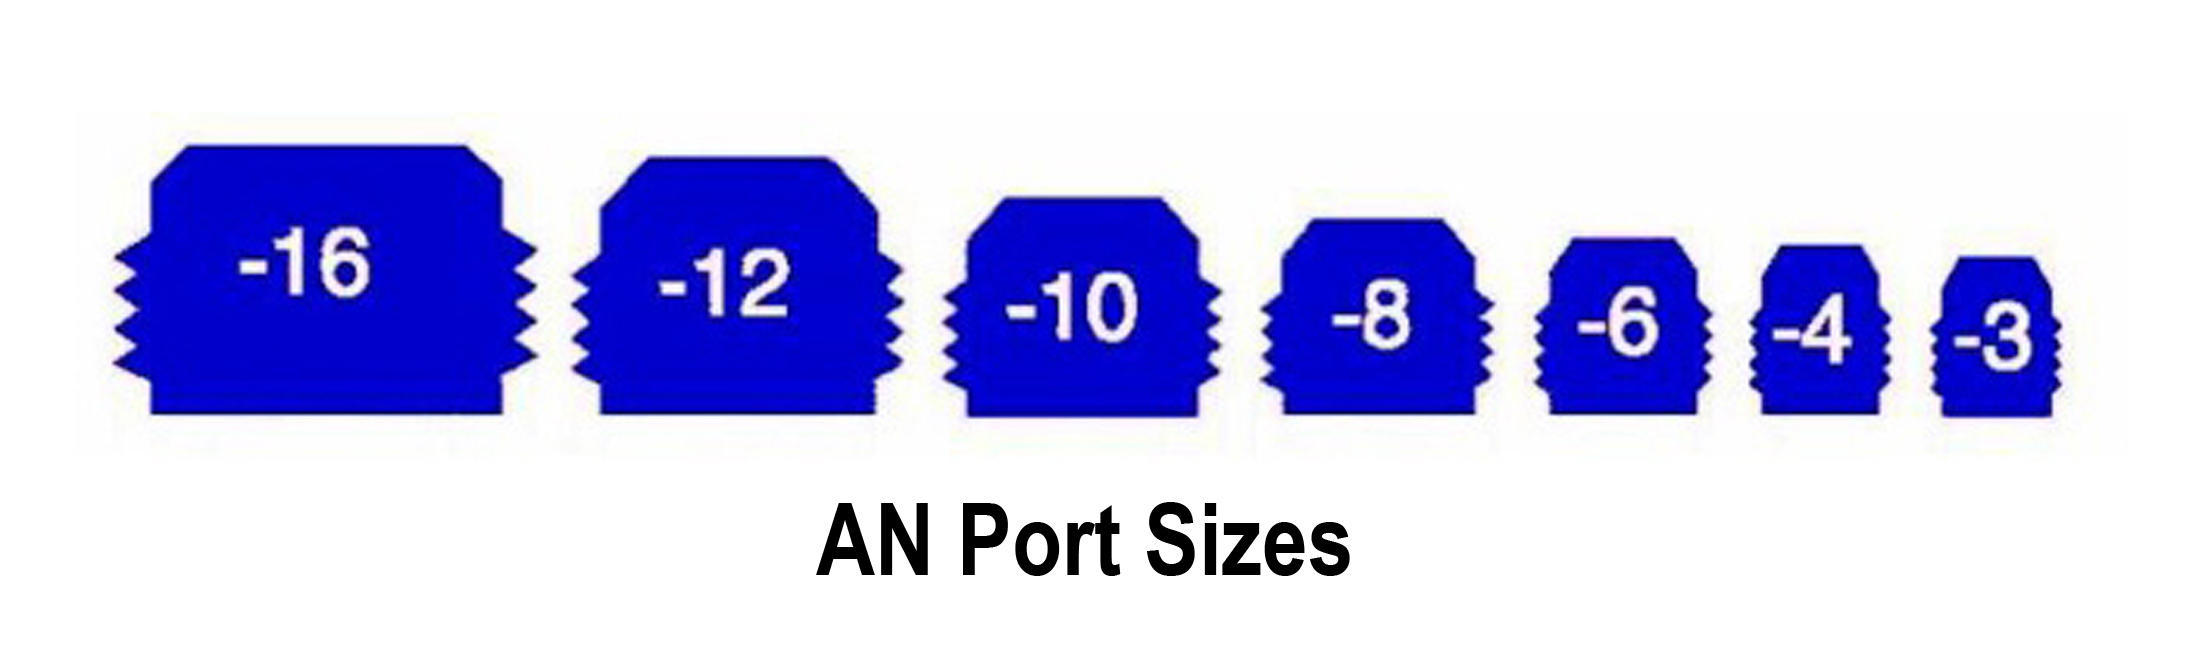 AN Port Sizes